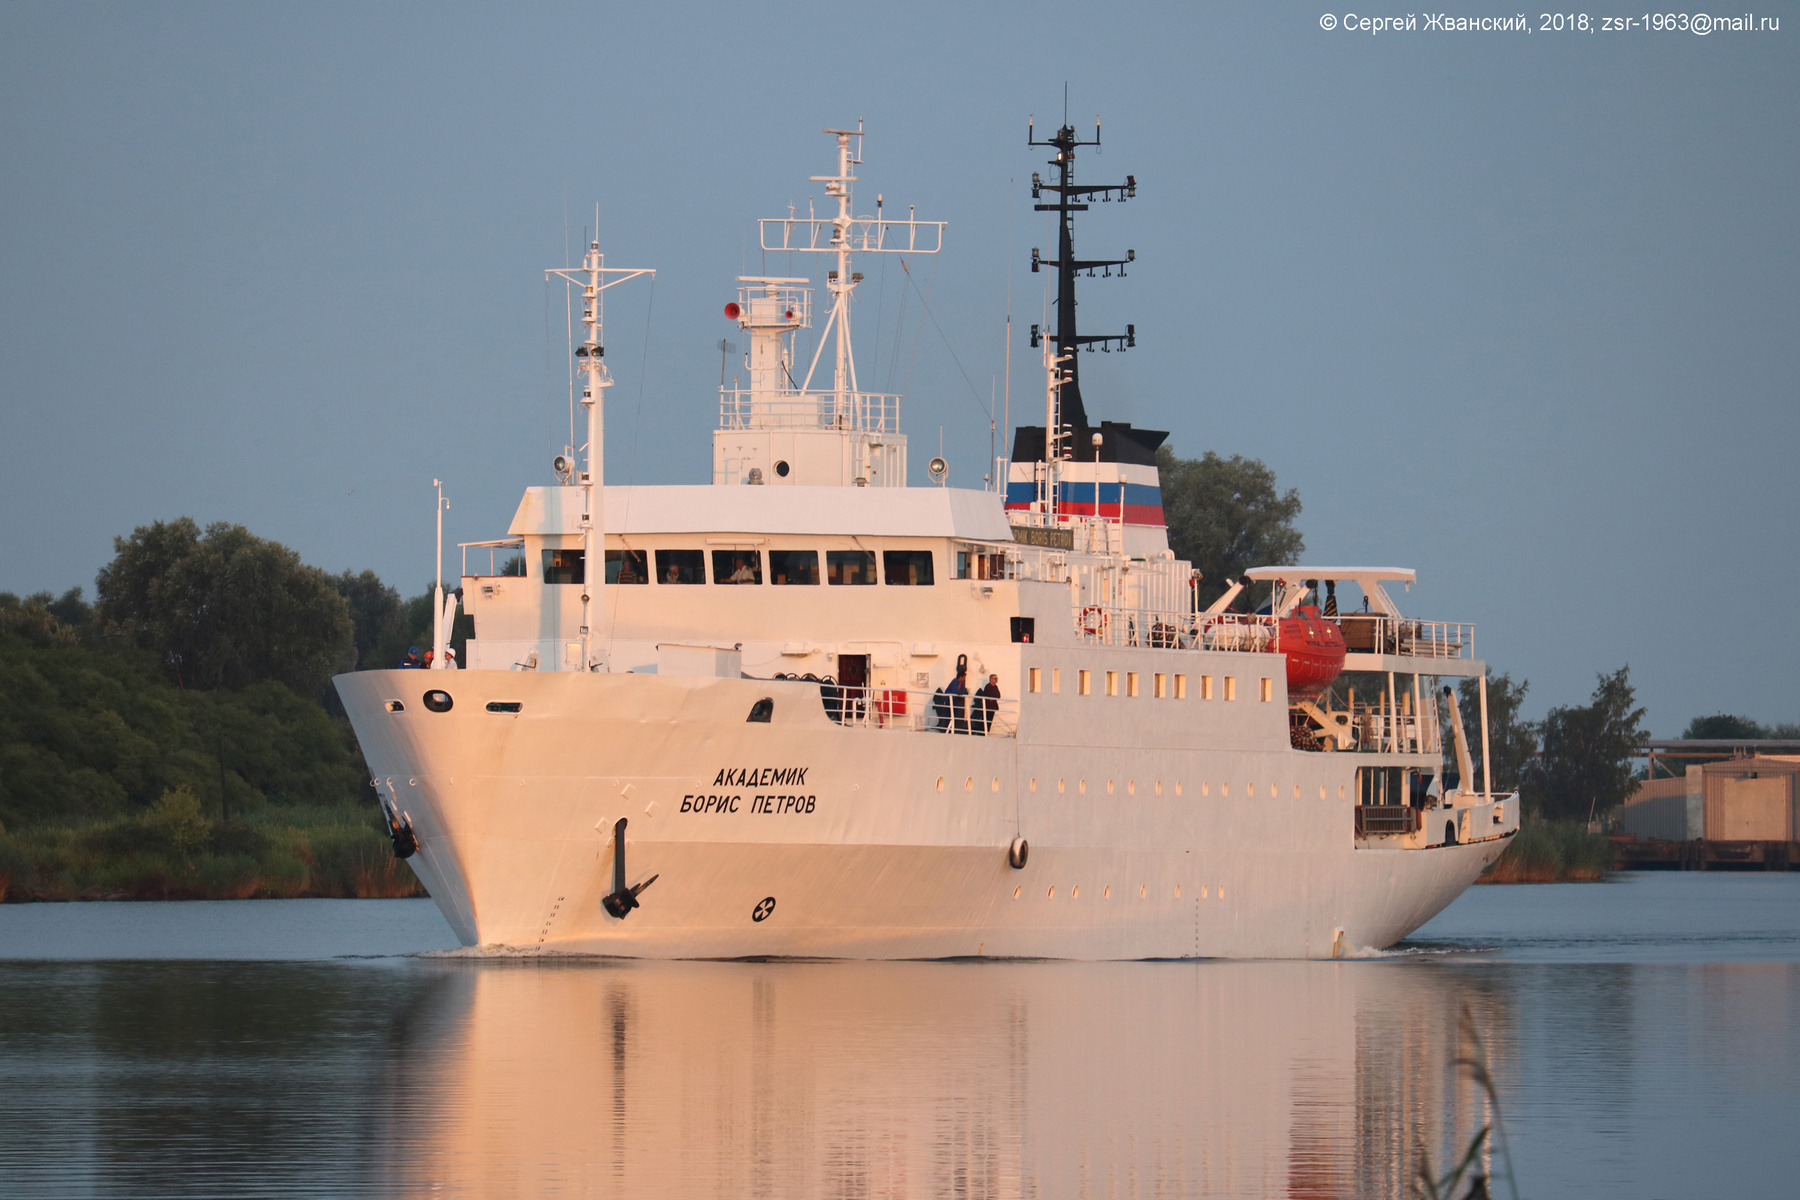 Научно-исследовательское судно "Академик Борис Петров" возвращается домой после длительного плавания и непродолжительного ремонта. Раннее утро 18 июля 2018 г. 